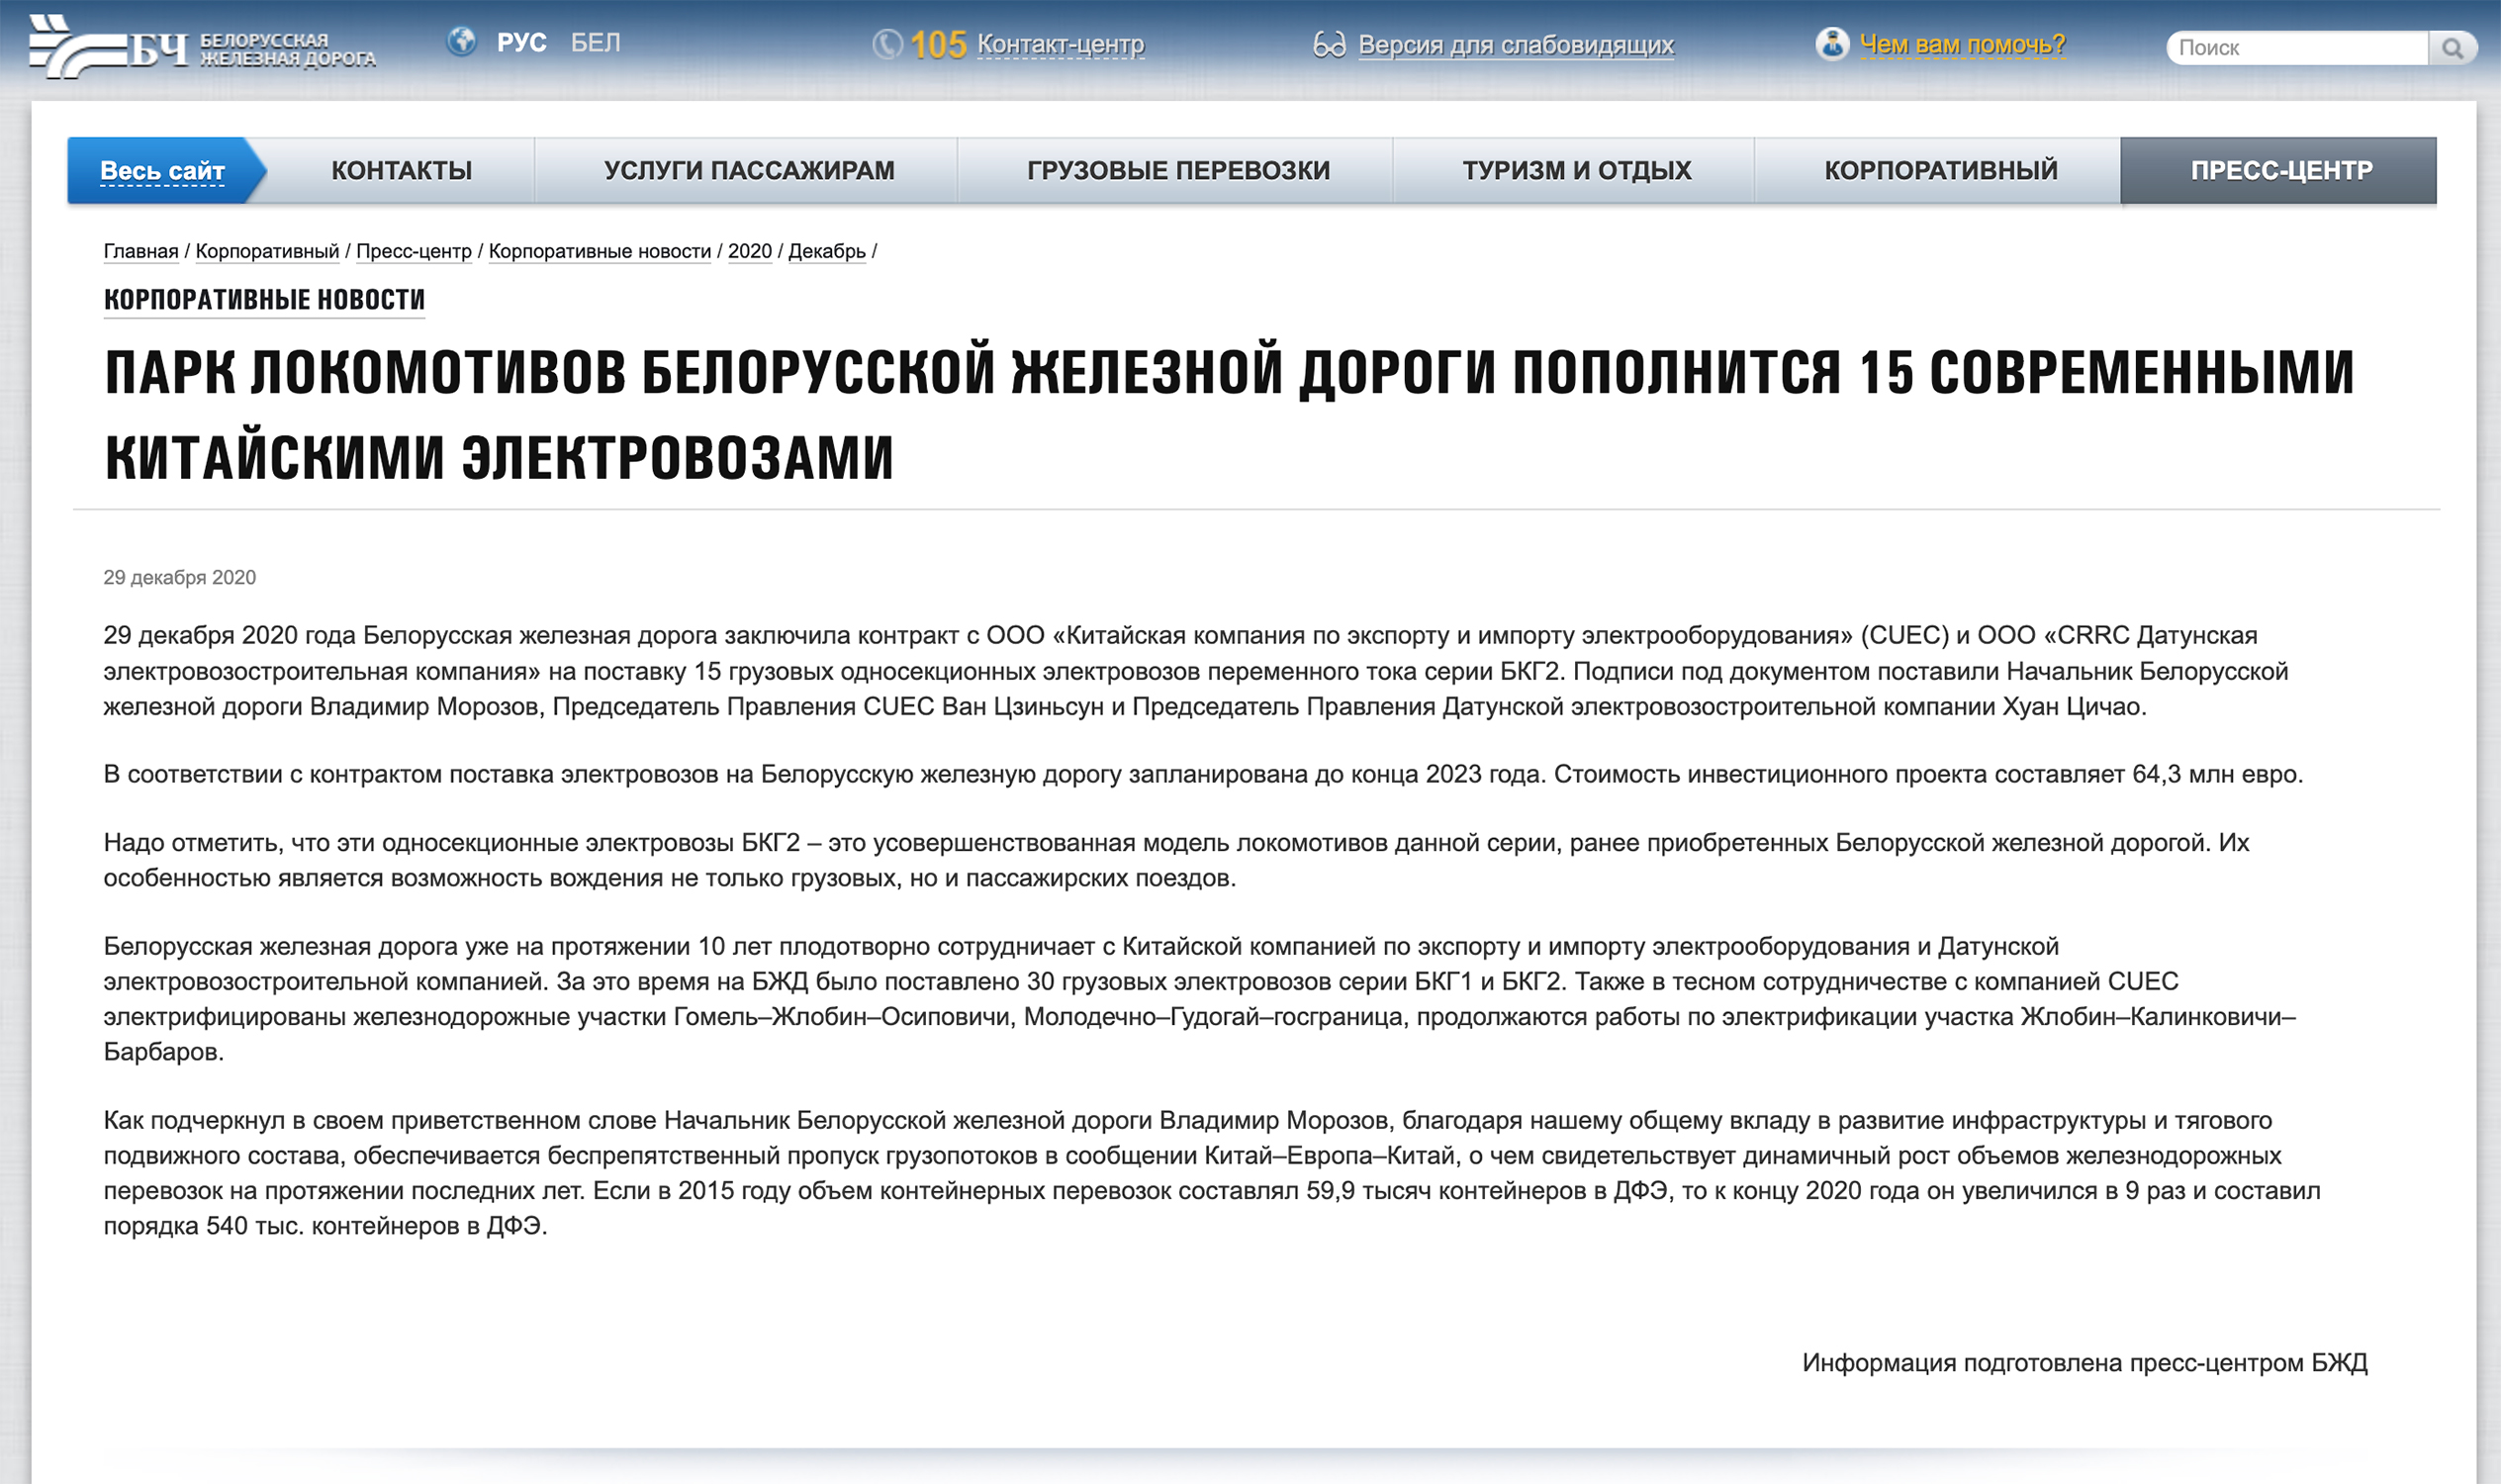 Официальная информация БЖД о заключении контракта на поставку 15 электровозов серии БКГ2